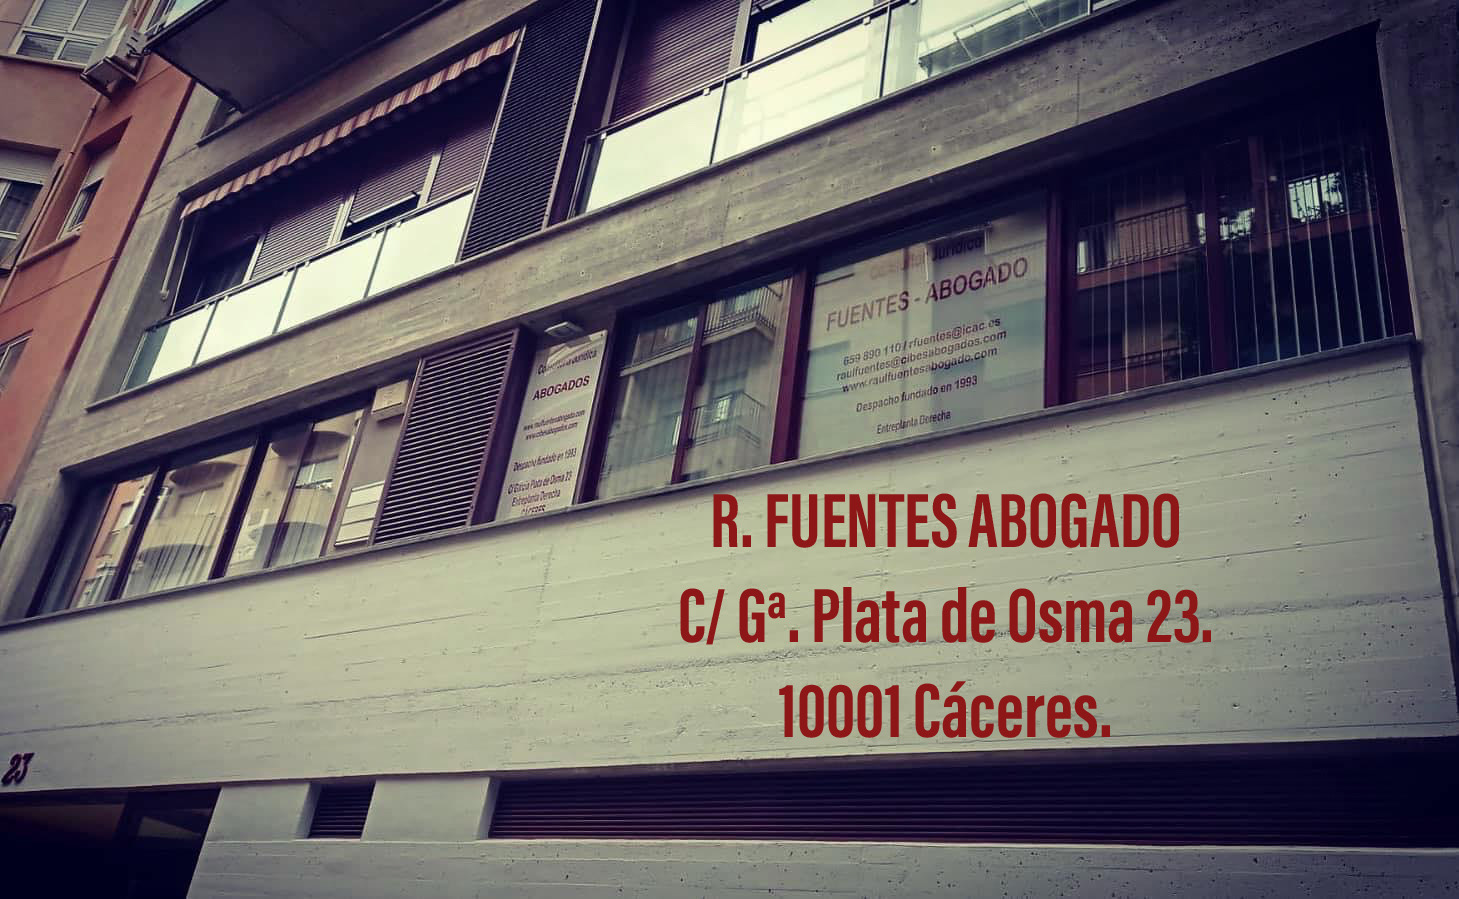 —

R. FUENTES ABOGADO
C/ G4 Plata de Osma 23.
10001 Caceres.